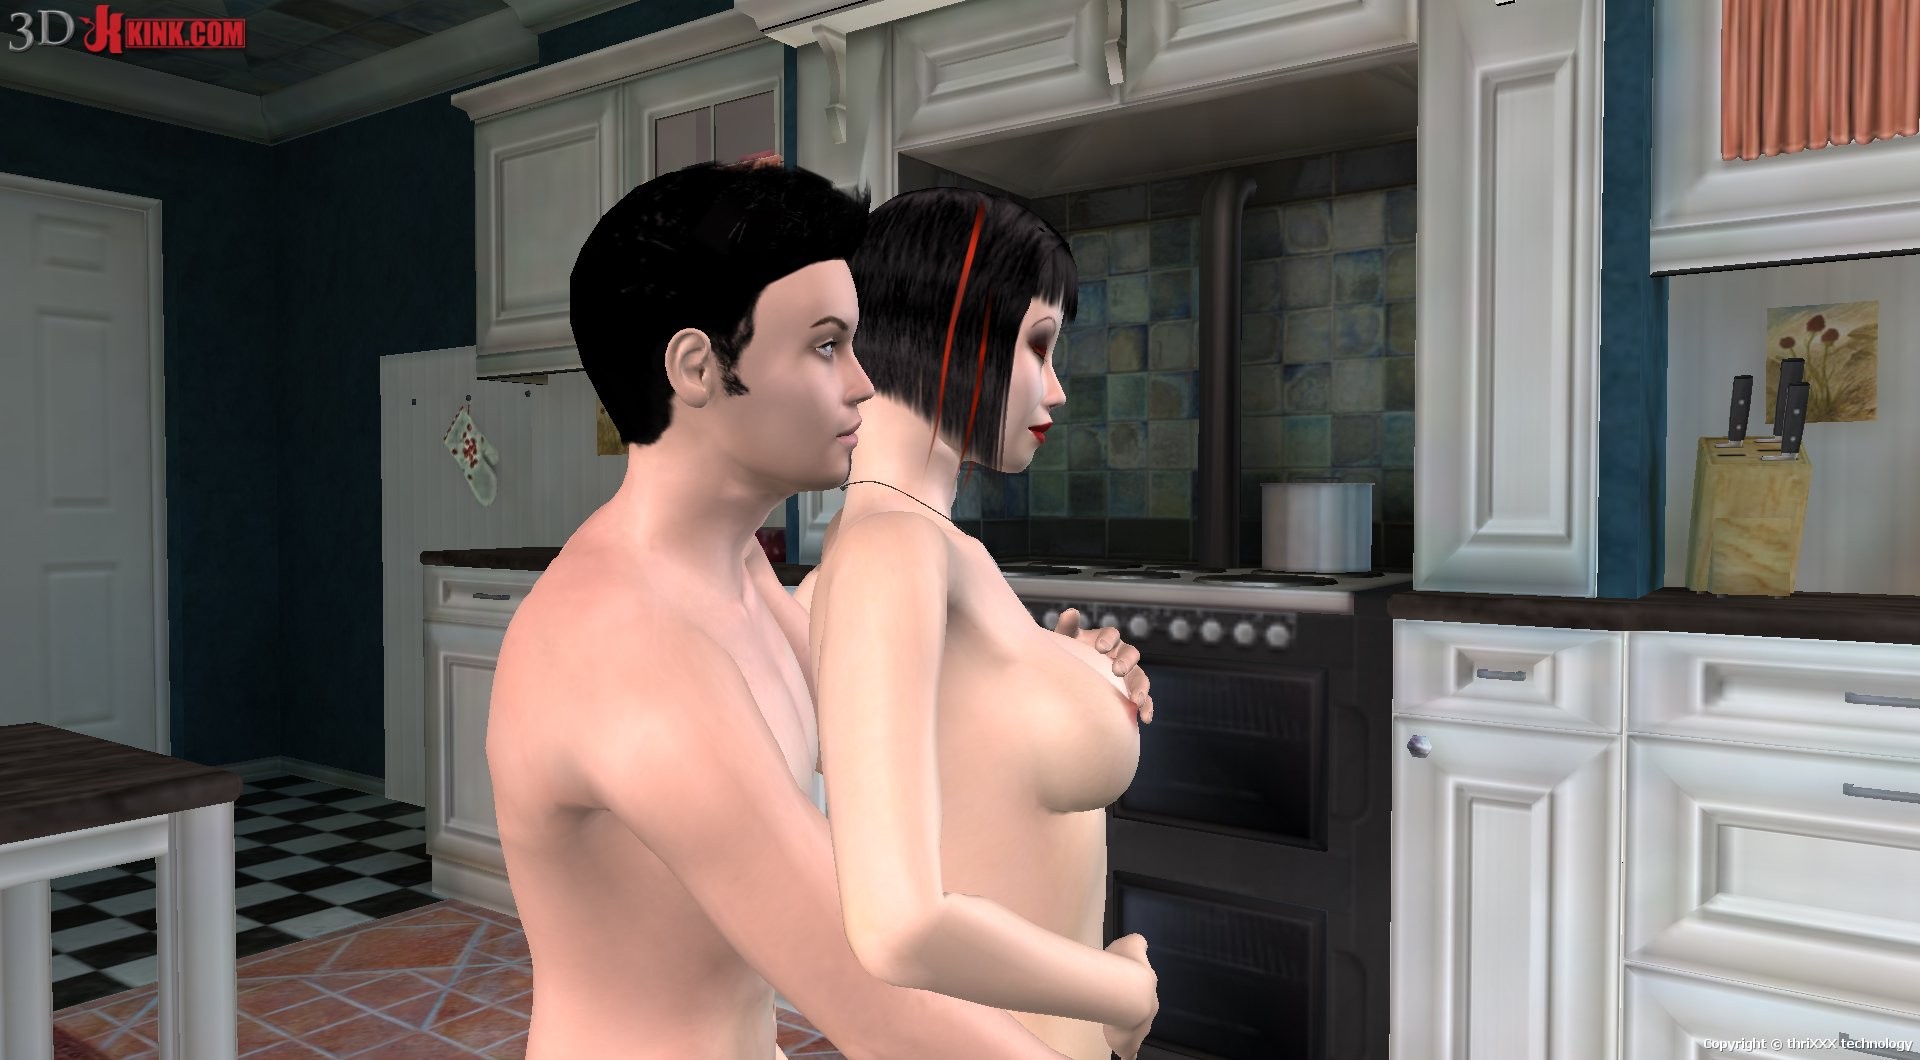 Sexe hardcore dans une cuisine créée dans un jeu sexuel virtuel fétichiste en 3d !
 #69588657